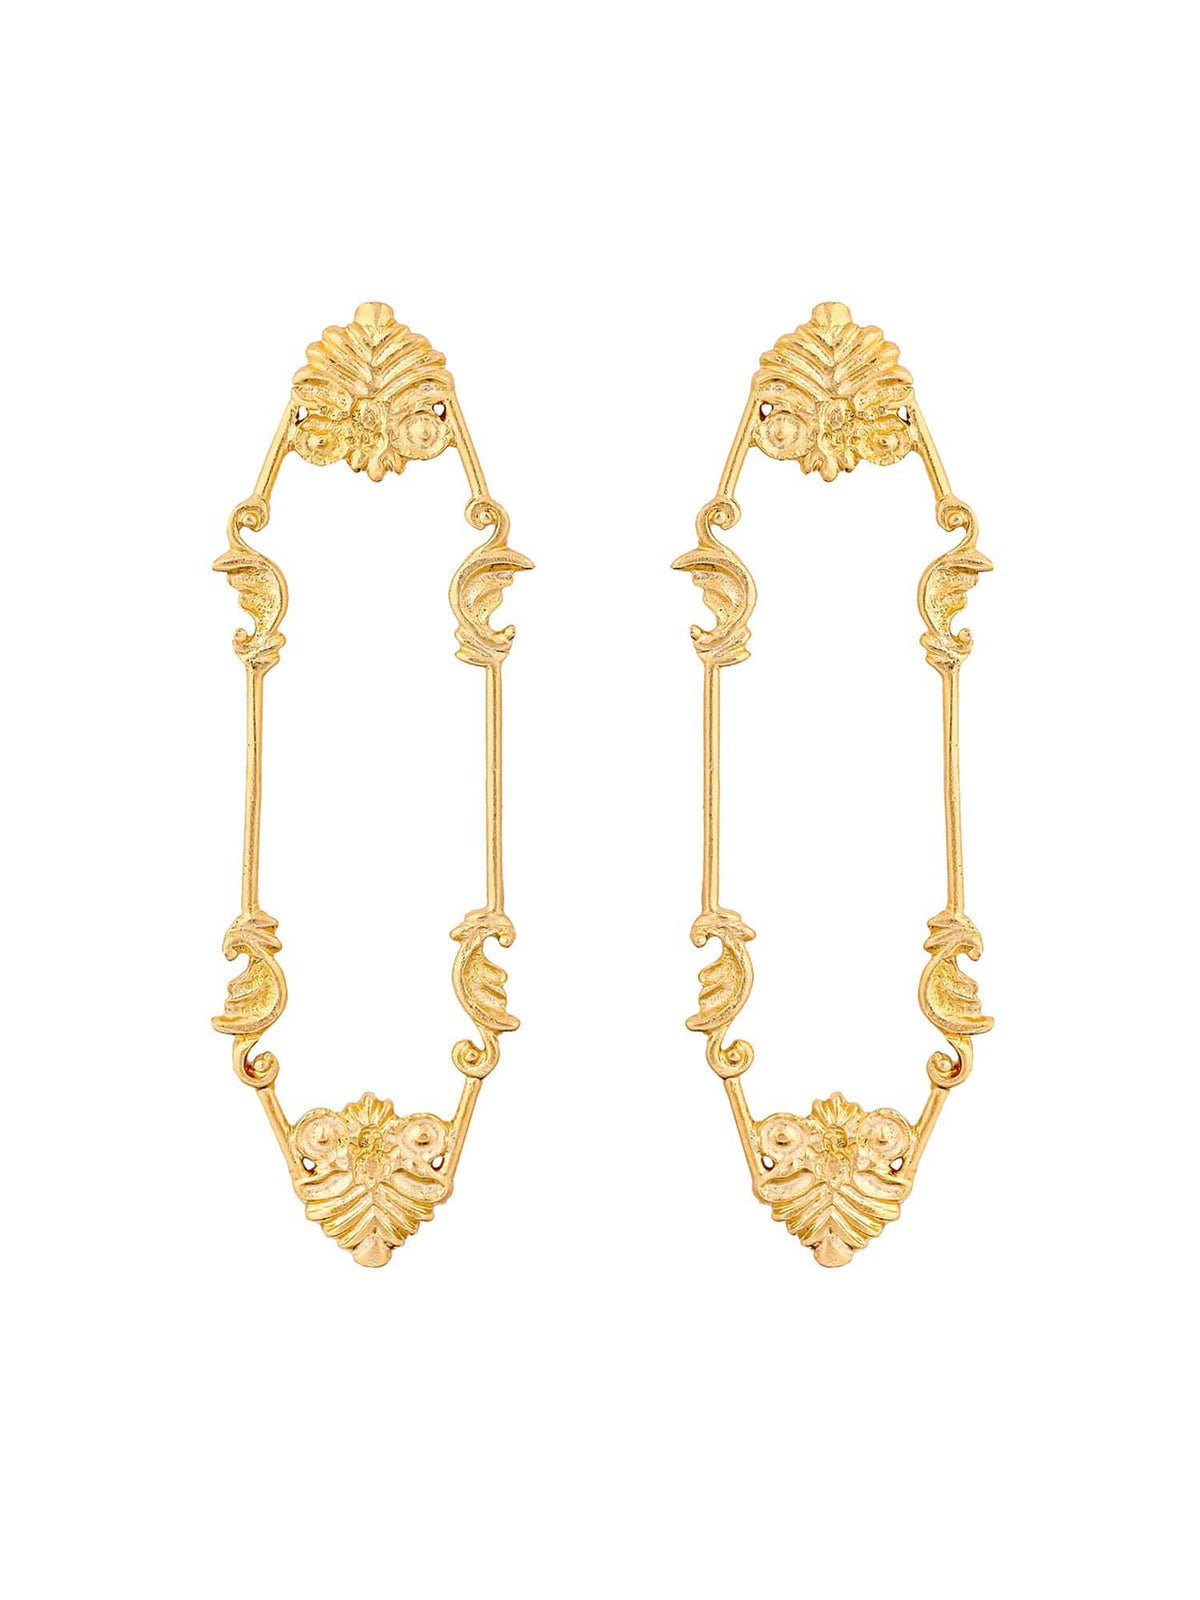 Charpente earrings